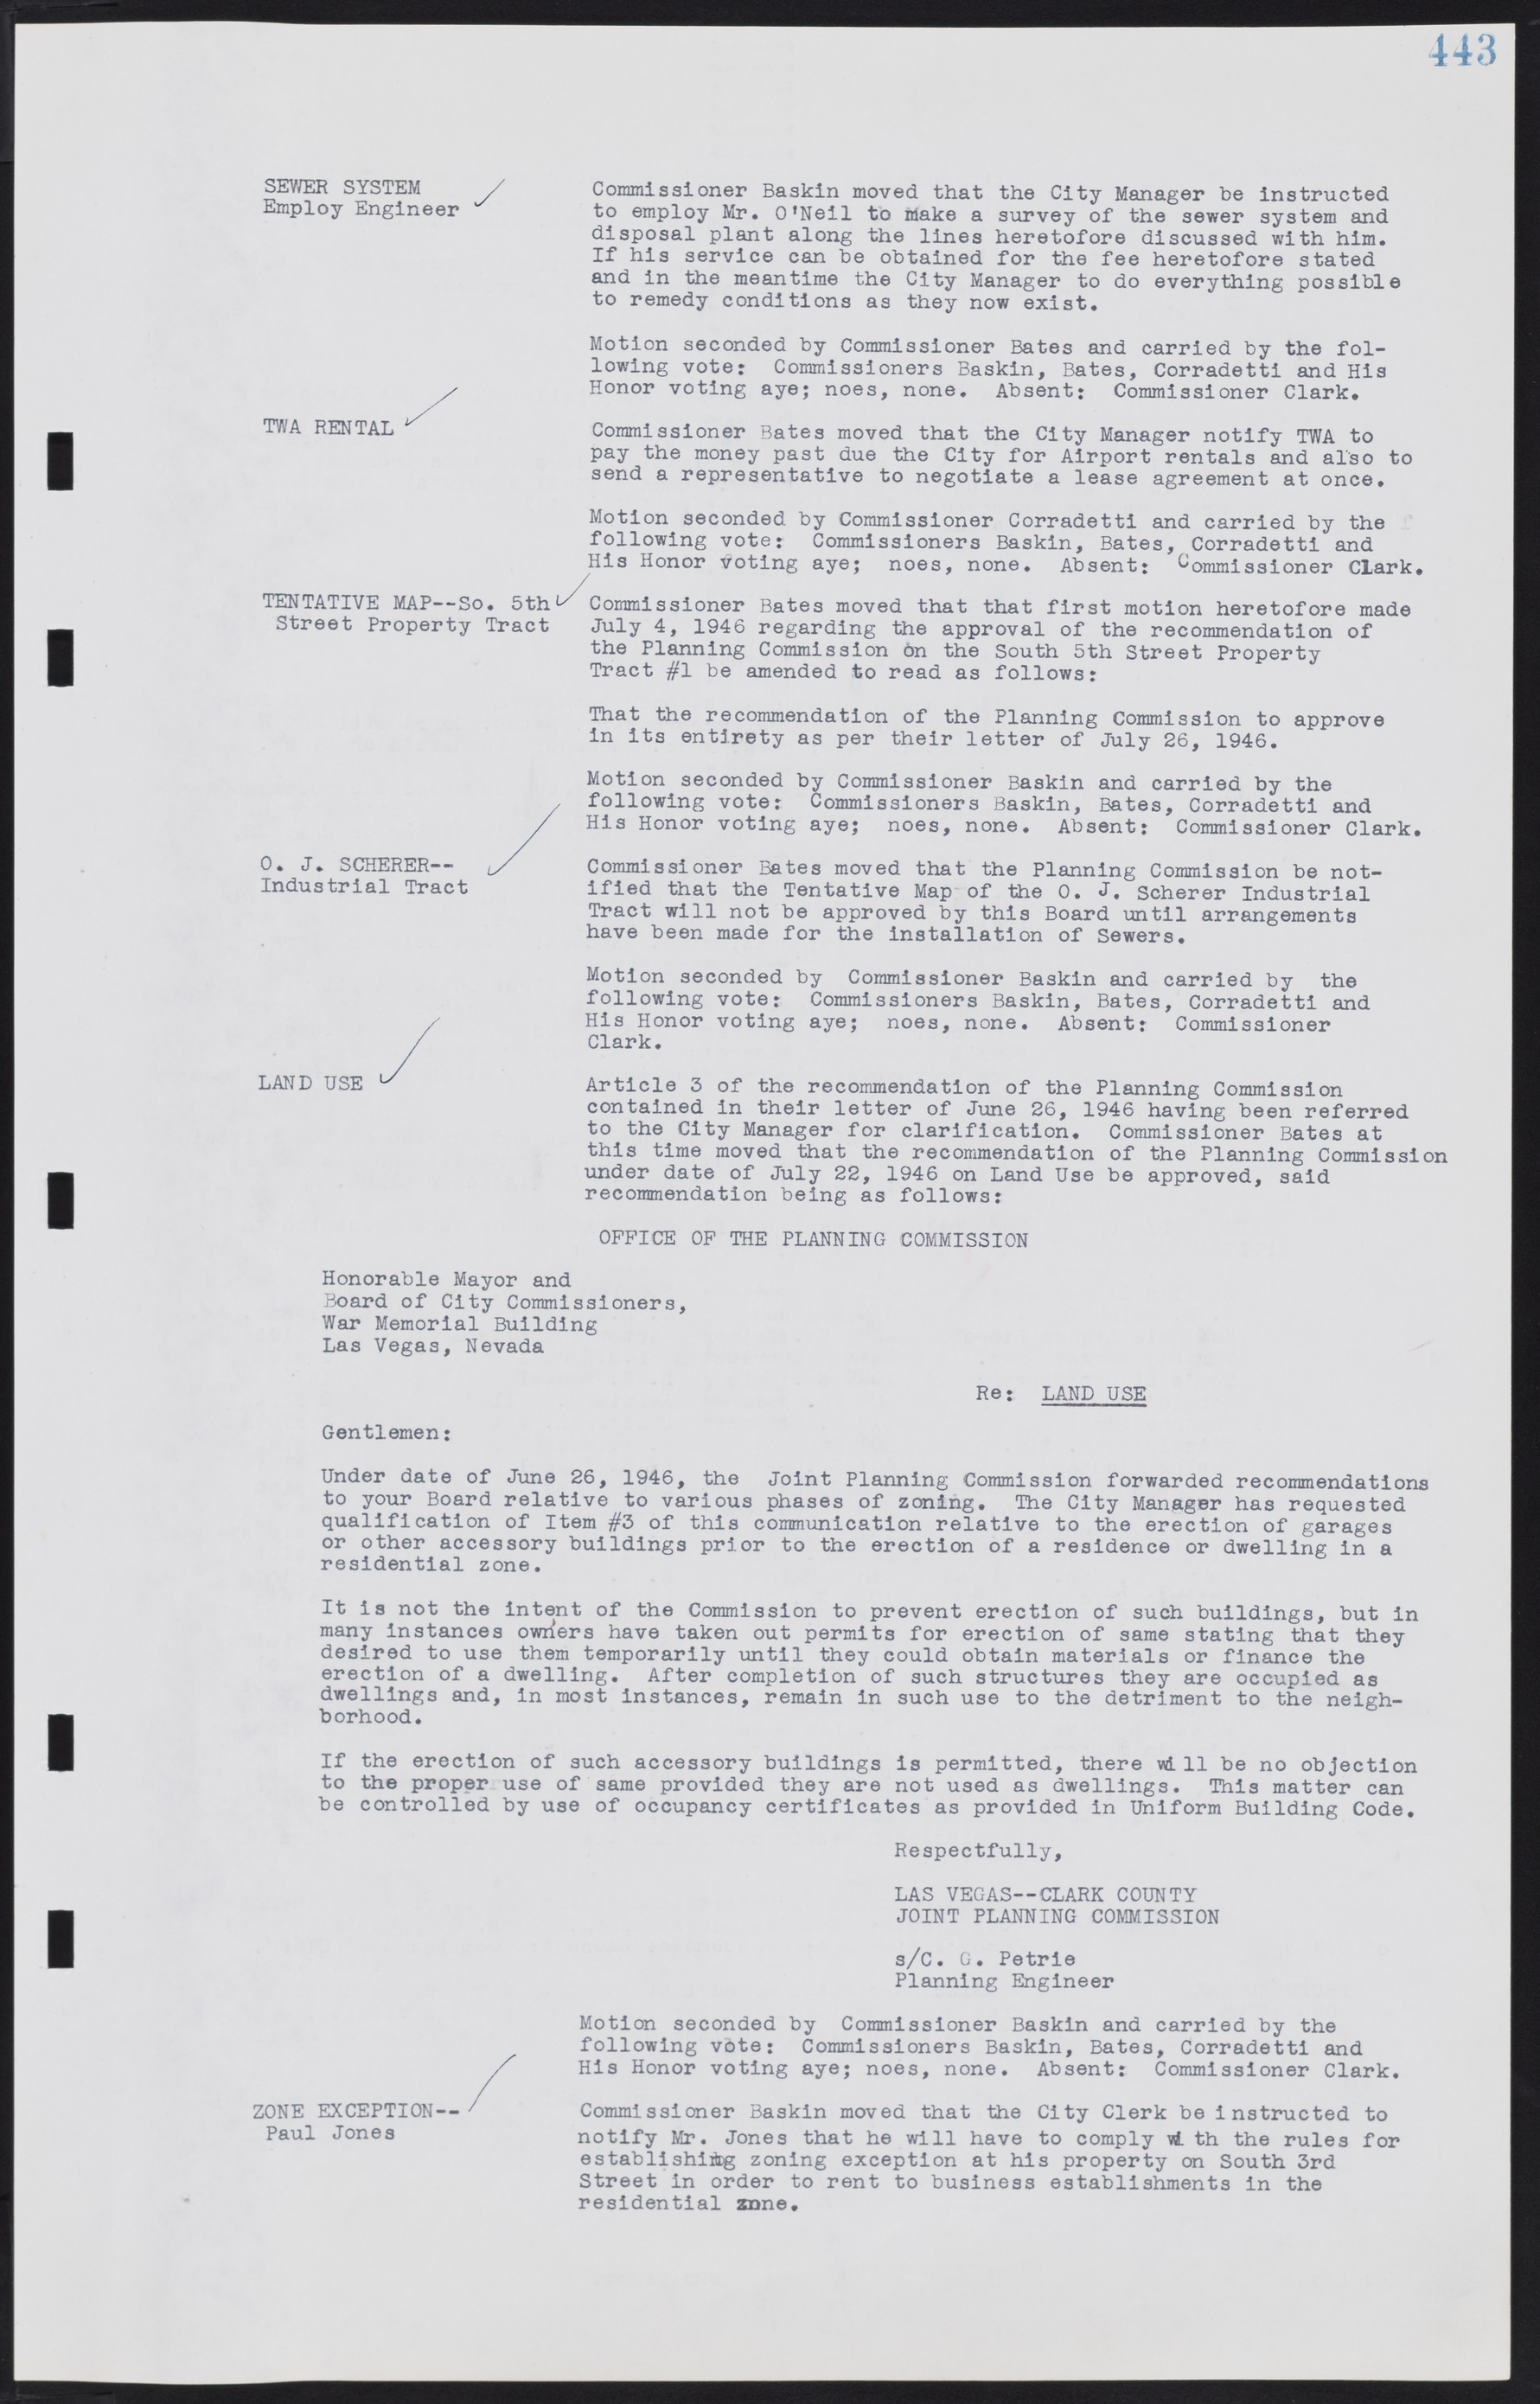 Las Vegas City Commission Minutes, August 11, 1942 to December 30, 1946, lvc000005-474